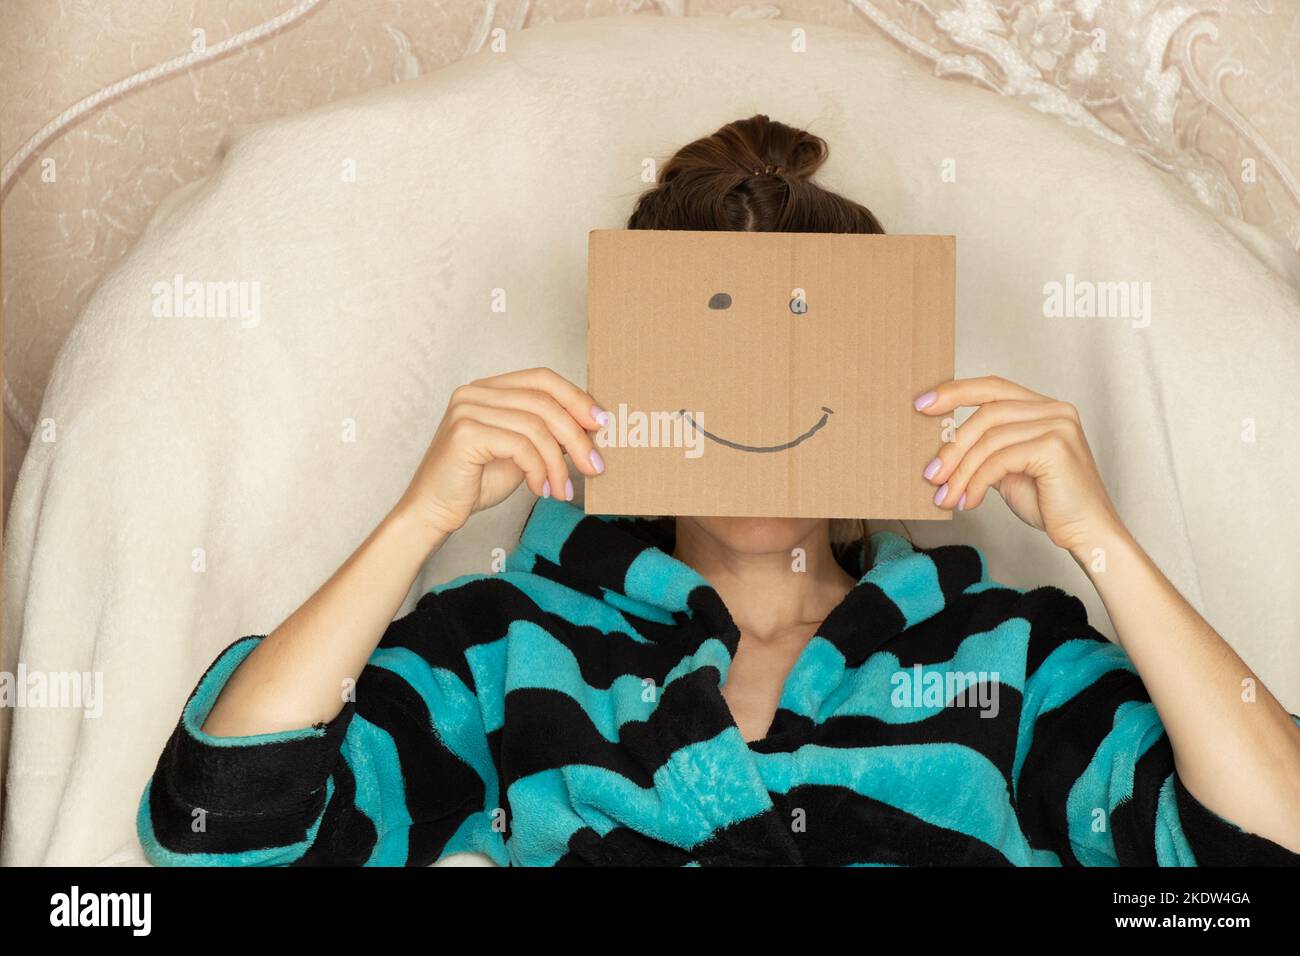 La ragazza si siede a casa in una poltrona e tiene una scatola di cartone con un sorriso allegro, buon umore e gioia Foto Stock